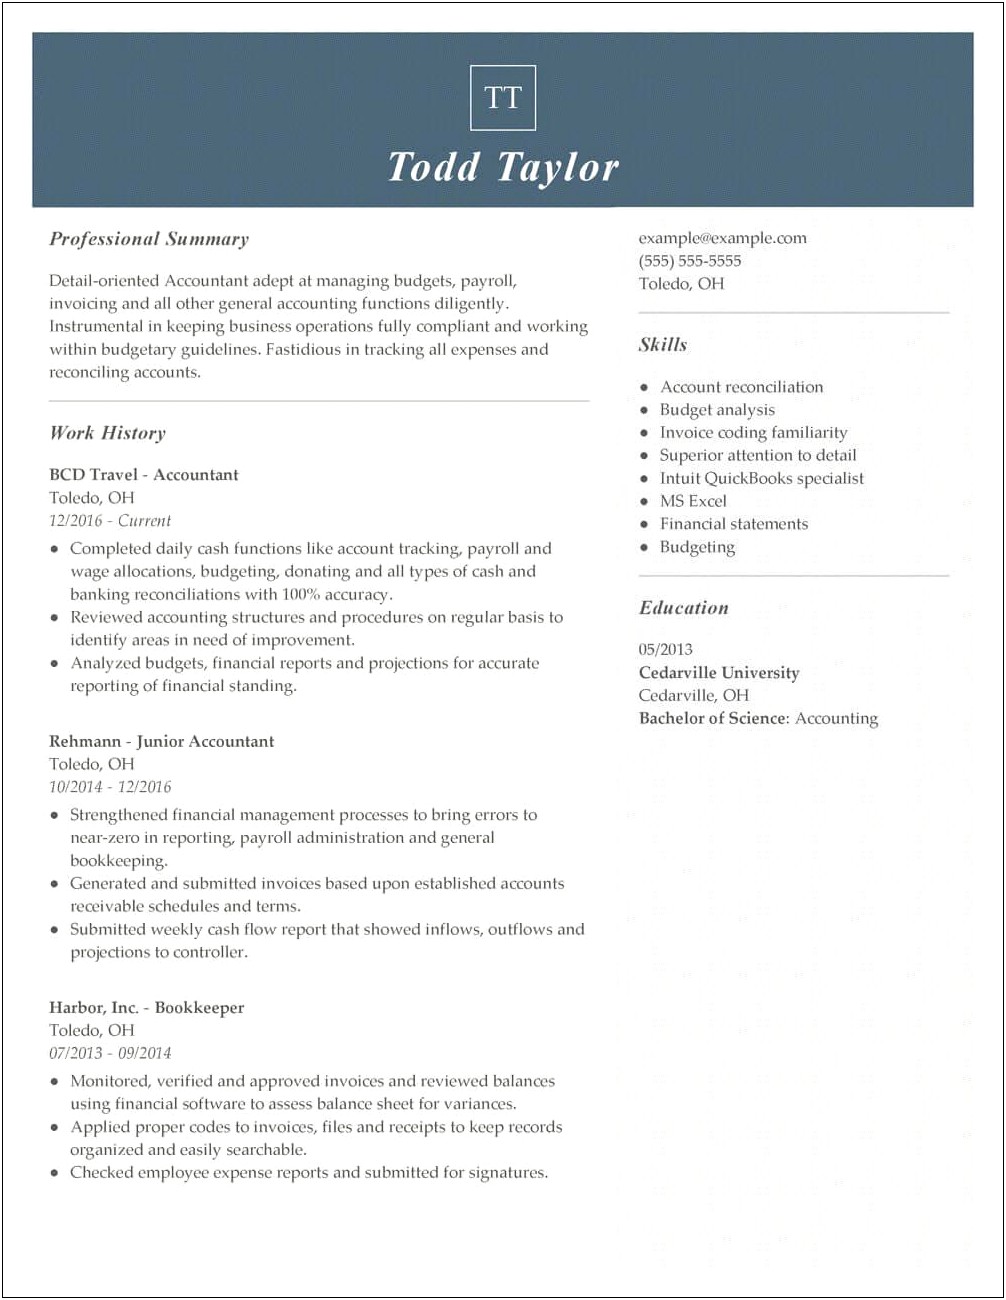 Best Resume Summary For Any Job